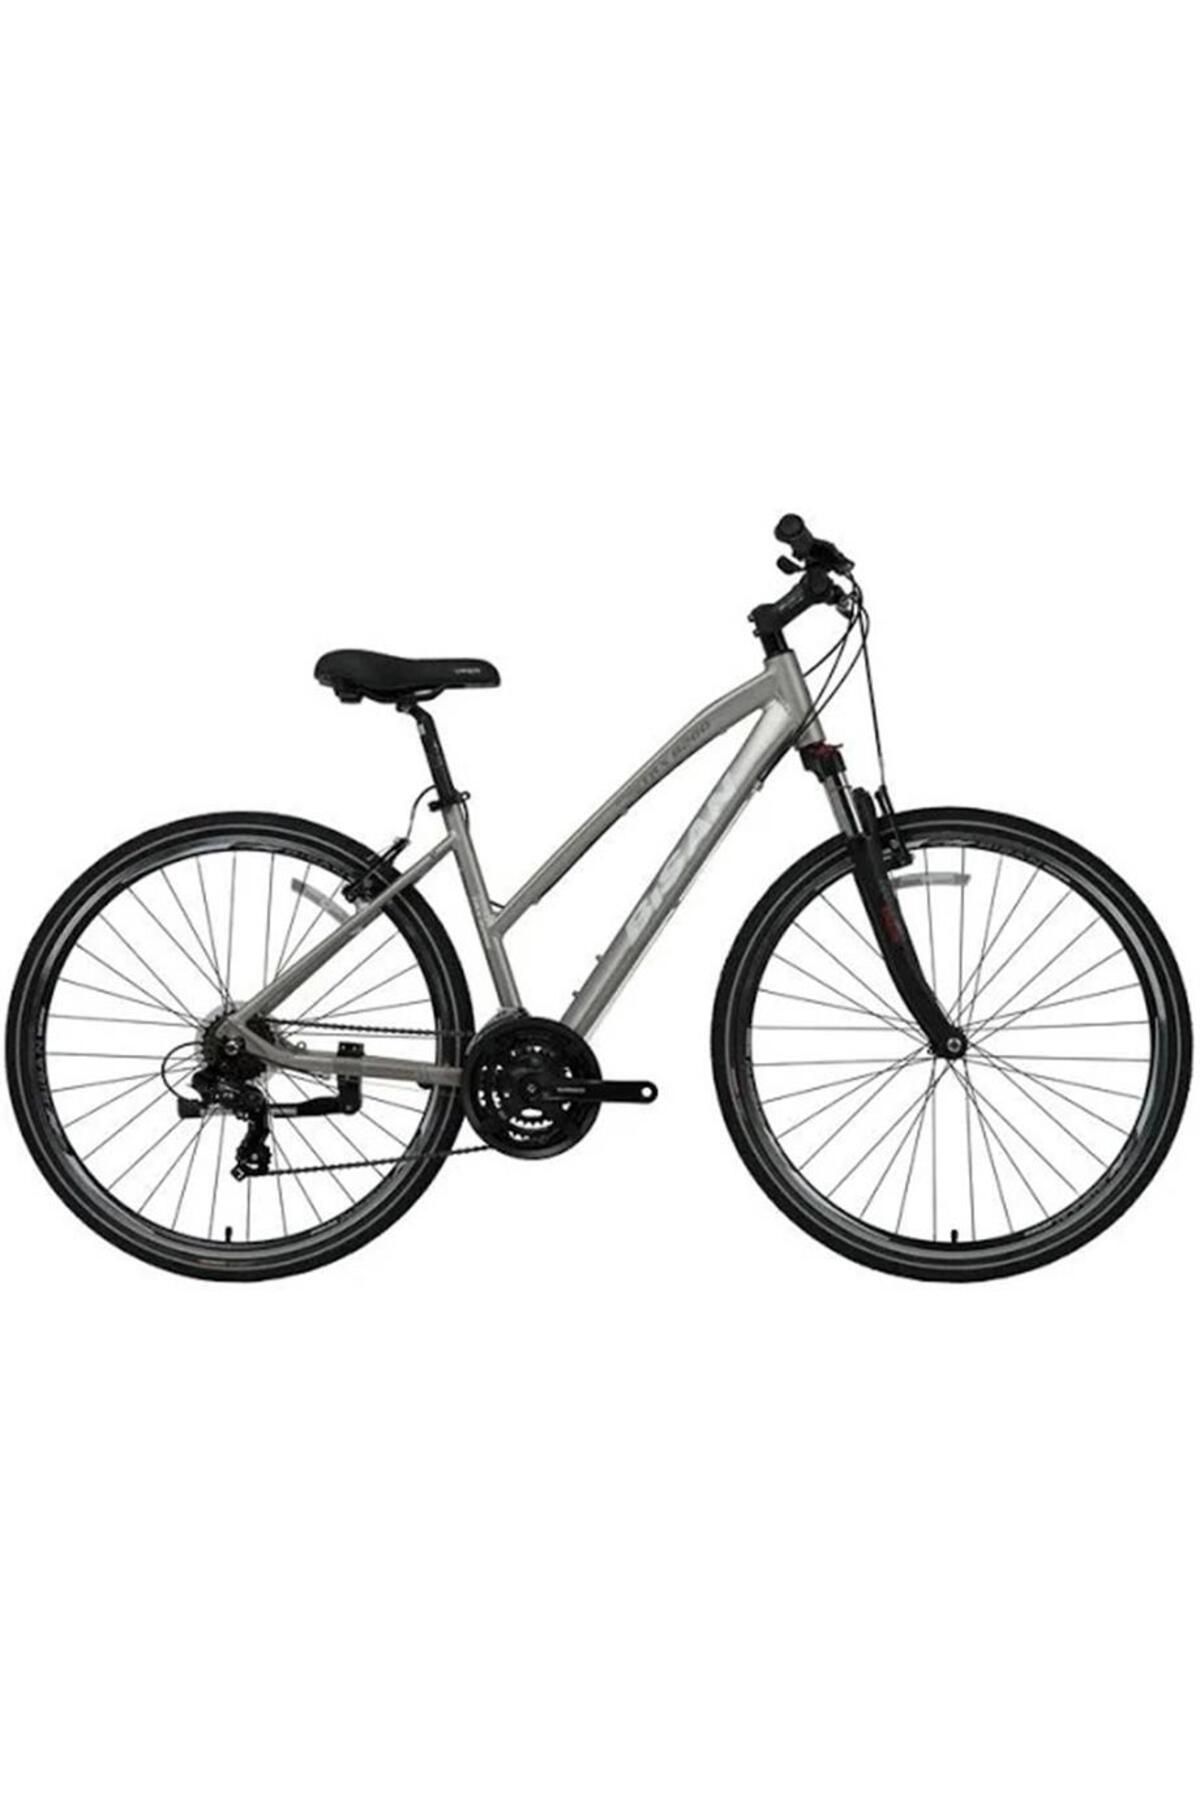 Bisan Trx 8200 Kadın Şehir Bisikleti 45cm V 28 Jant 21 Vites Açık Metalik Gri Beyaz